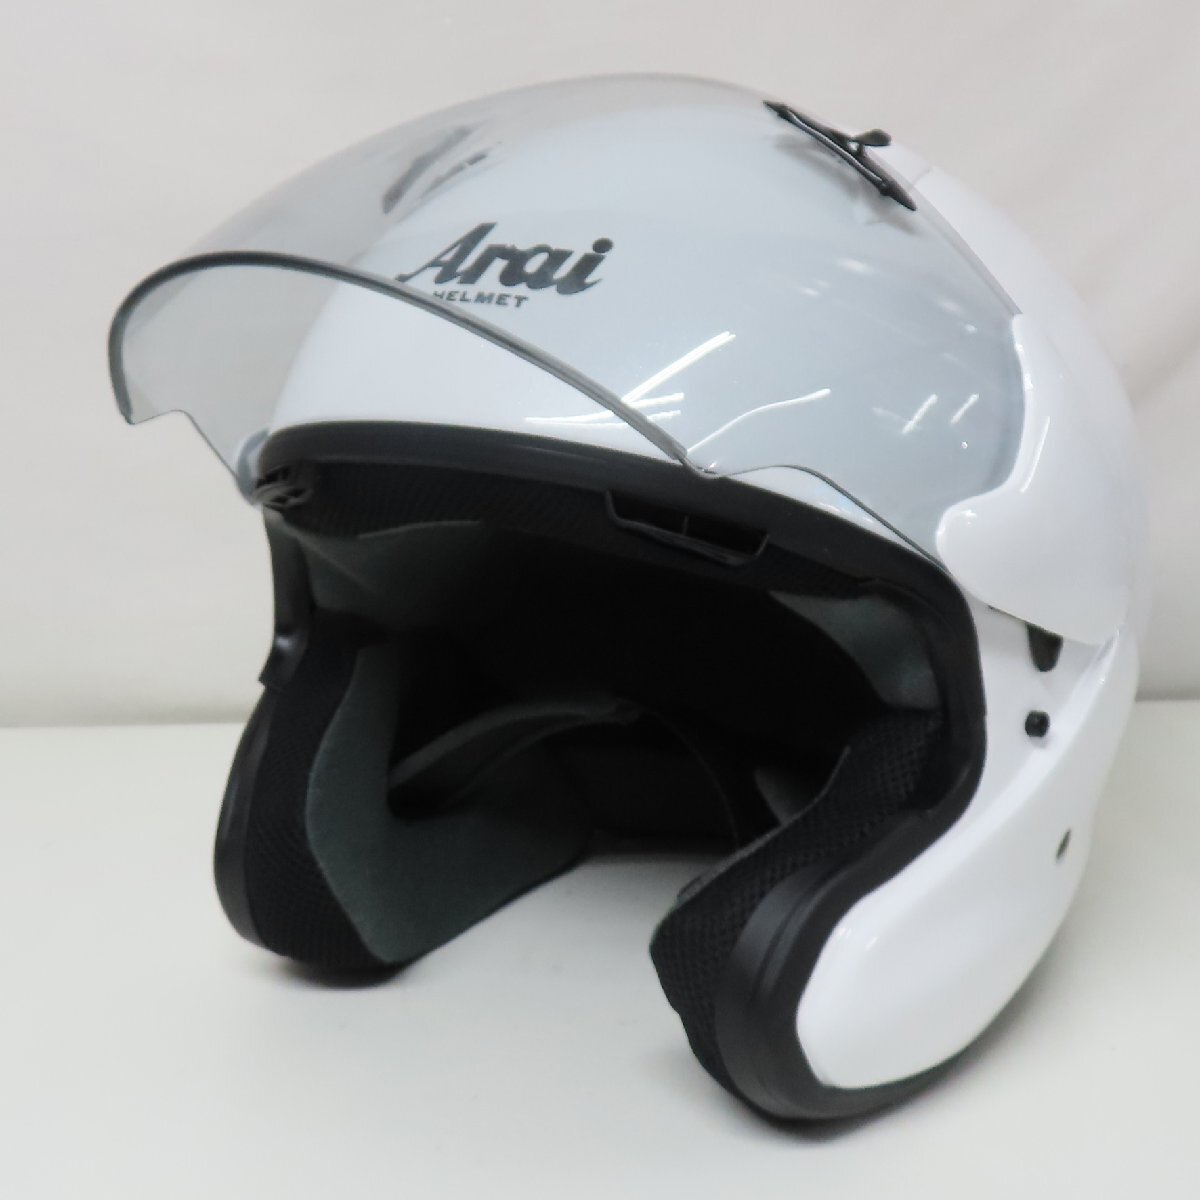 [ прекрасный товар ]Arai ARAI MZ-F XO шлем стакан белый XXXL размер большой мотоцикл 2 колесо мотоцикл скутер мопед 